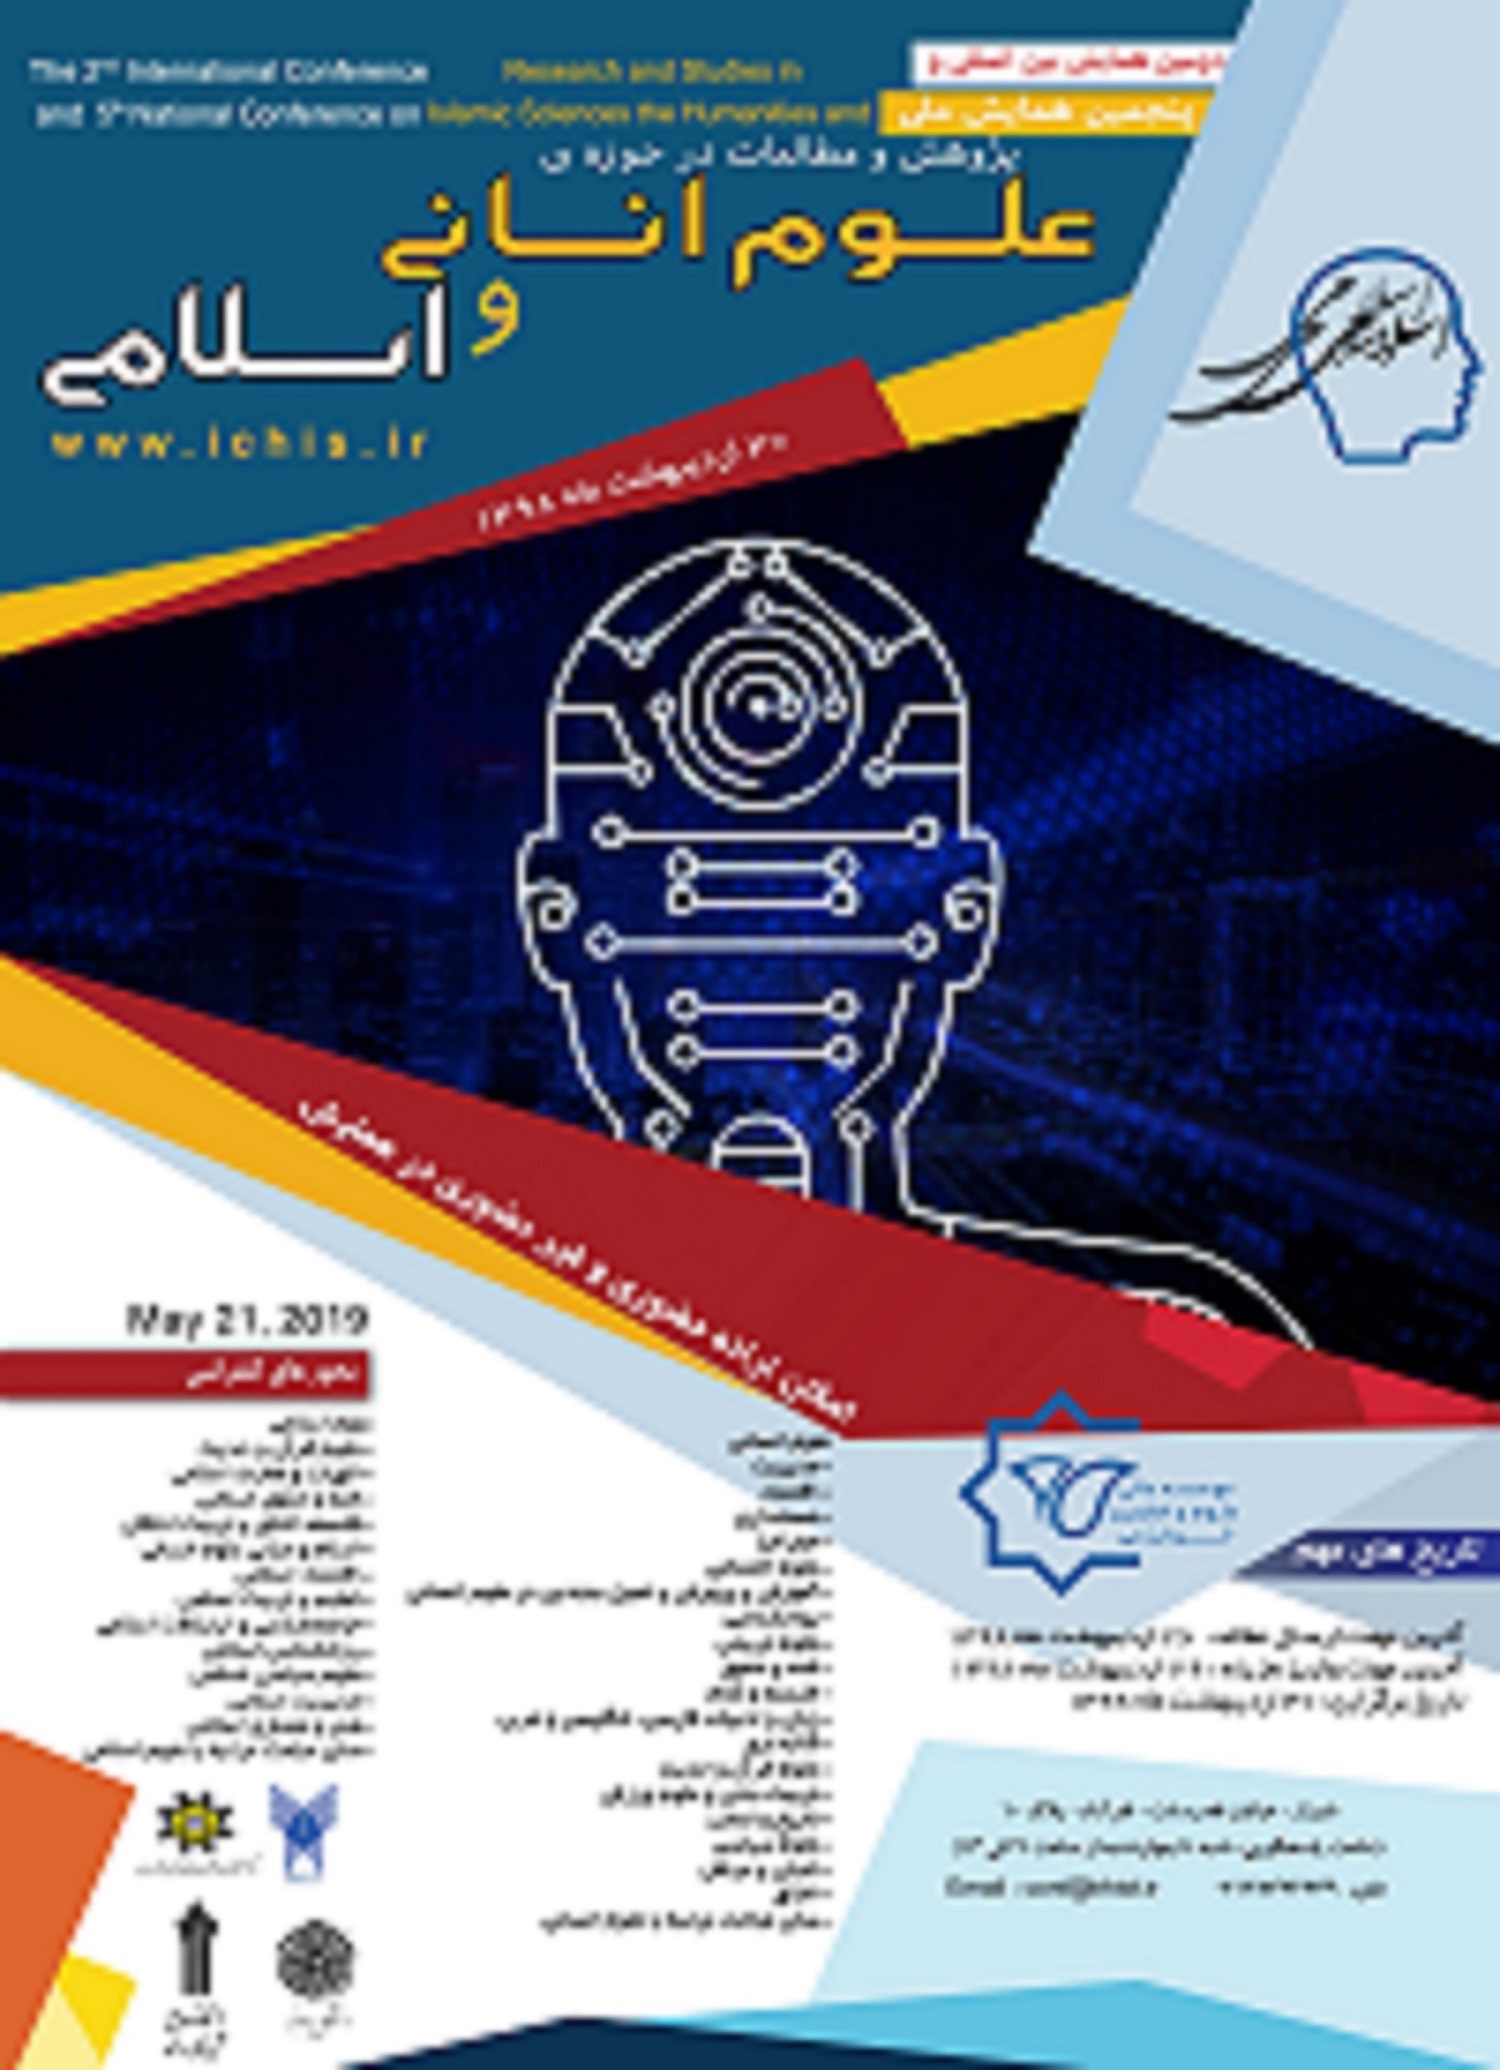 پوستر دومین همایش بین المللی و پنجمین همایش ملی پژوهش و مطالعات در حوزه علوم انسانی و اسلامی